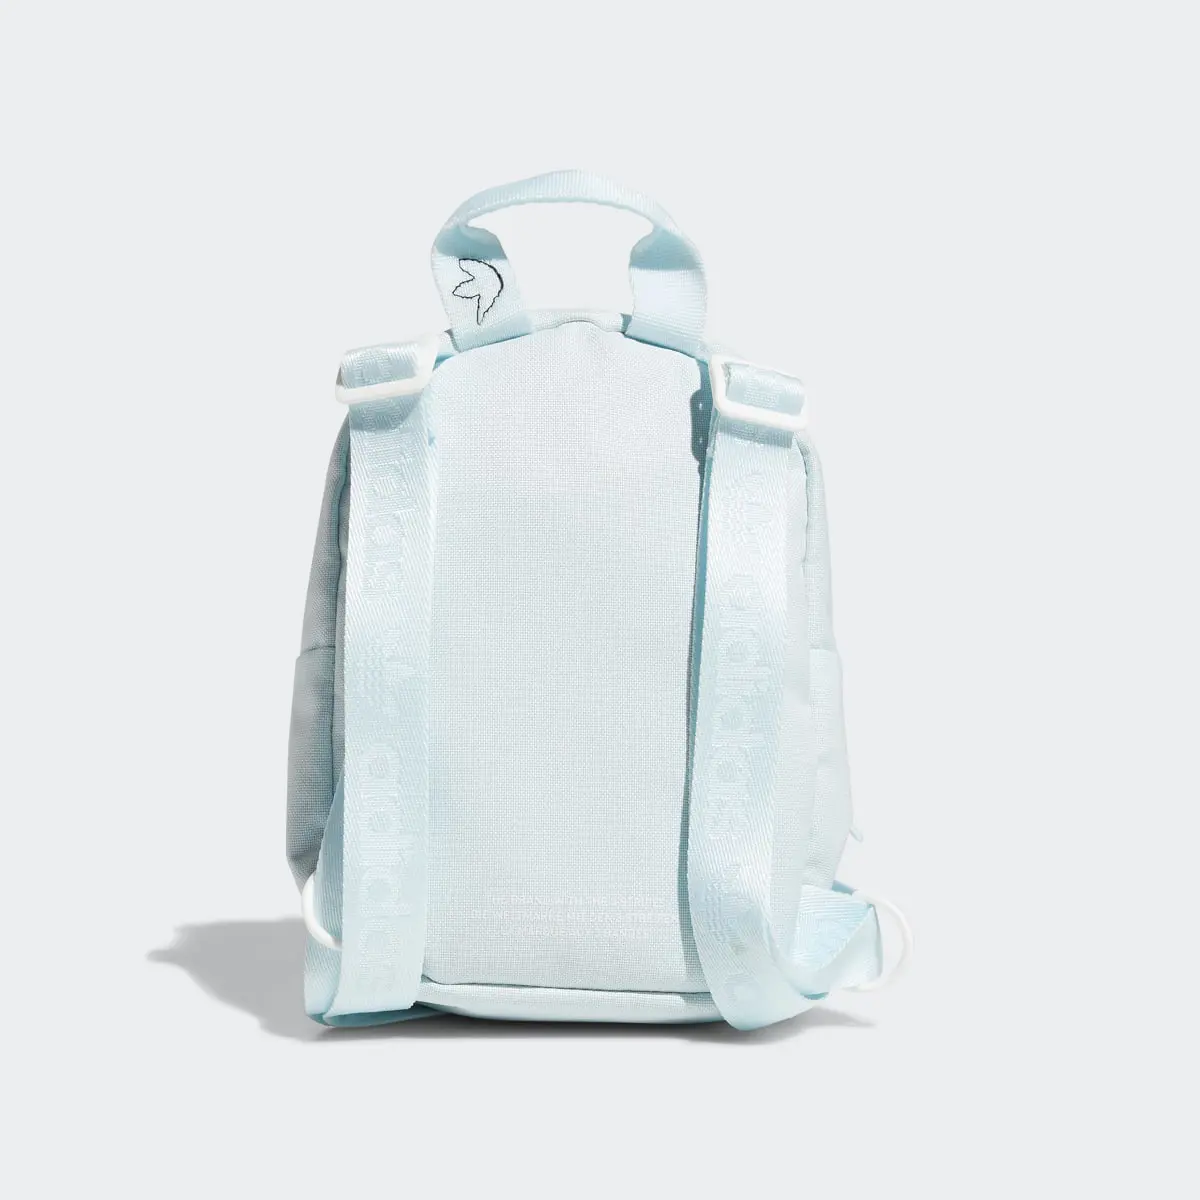 Adidas Trefoil 2.0 Mini Backpack. 3